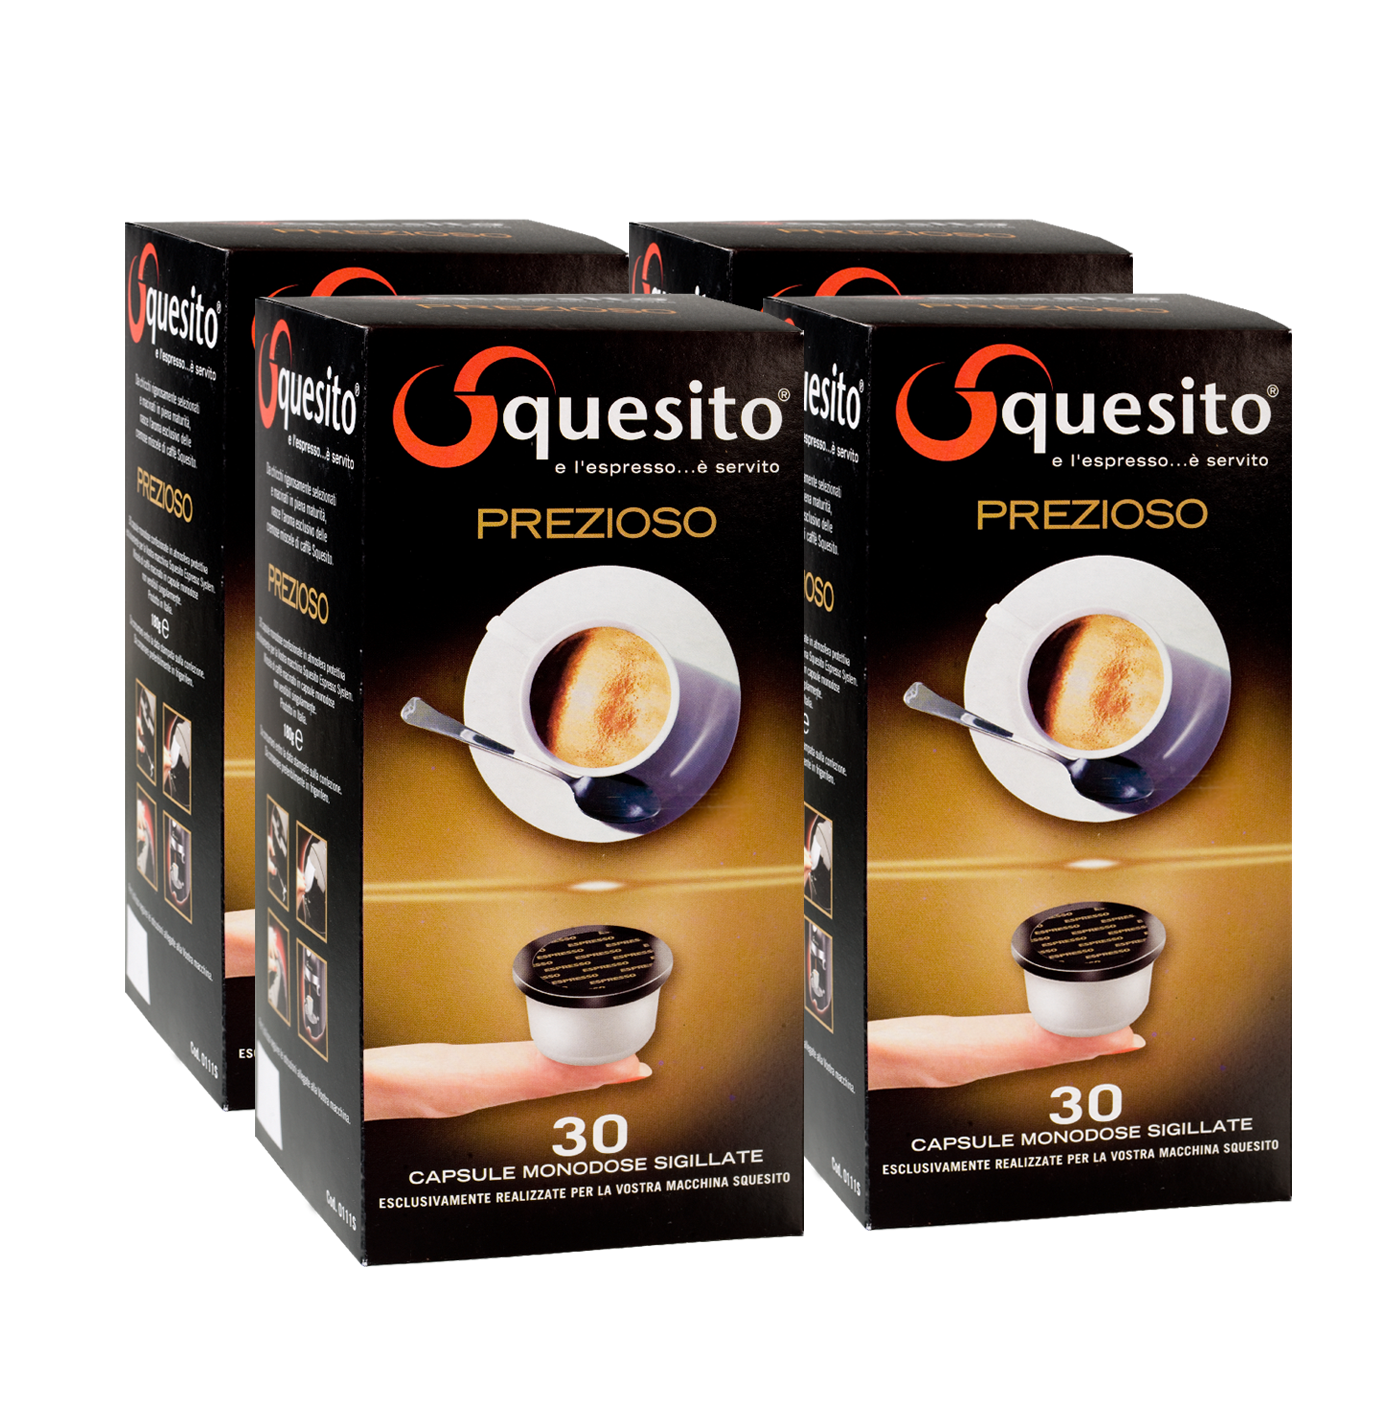 Капсулы кофе Squesito аналоги. Капсулы для кофемашины Squesito. Капсулы для кофемашины Squesito аналоги. Кофе в капсулах Squesito. Squesito капсулы купить